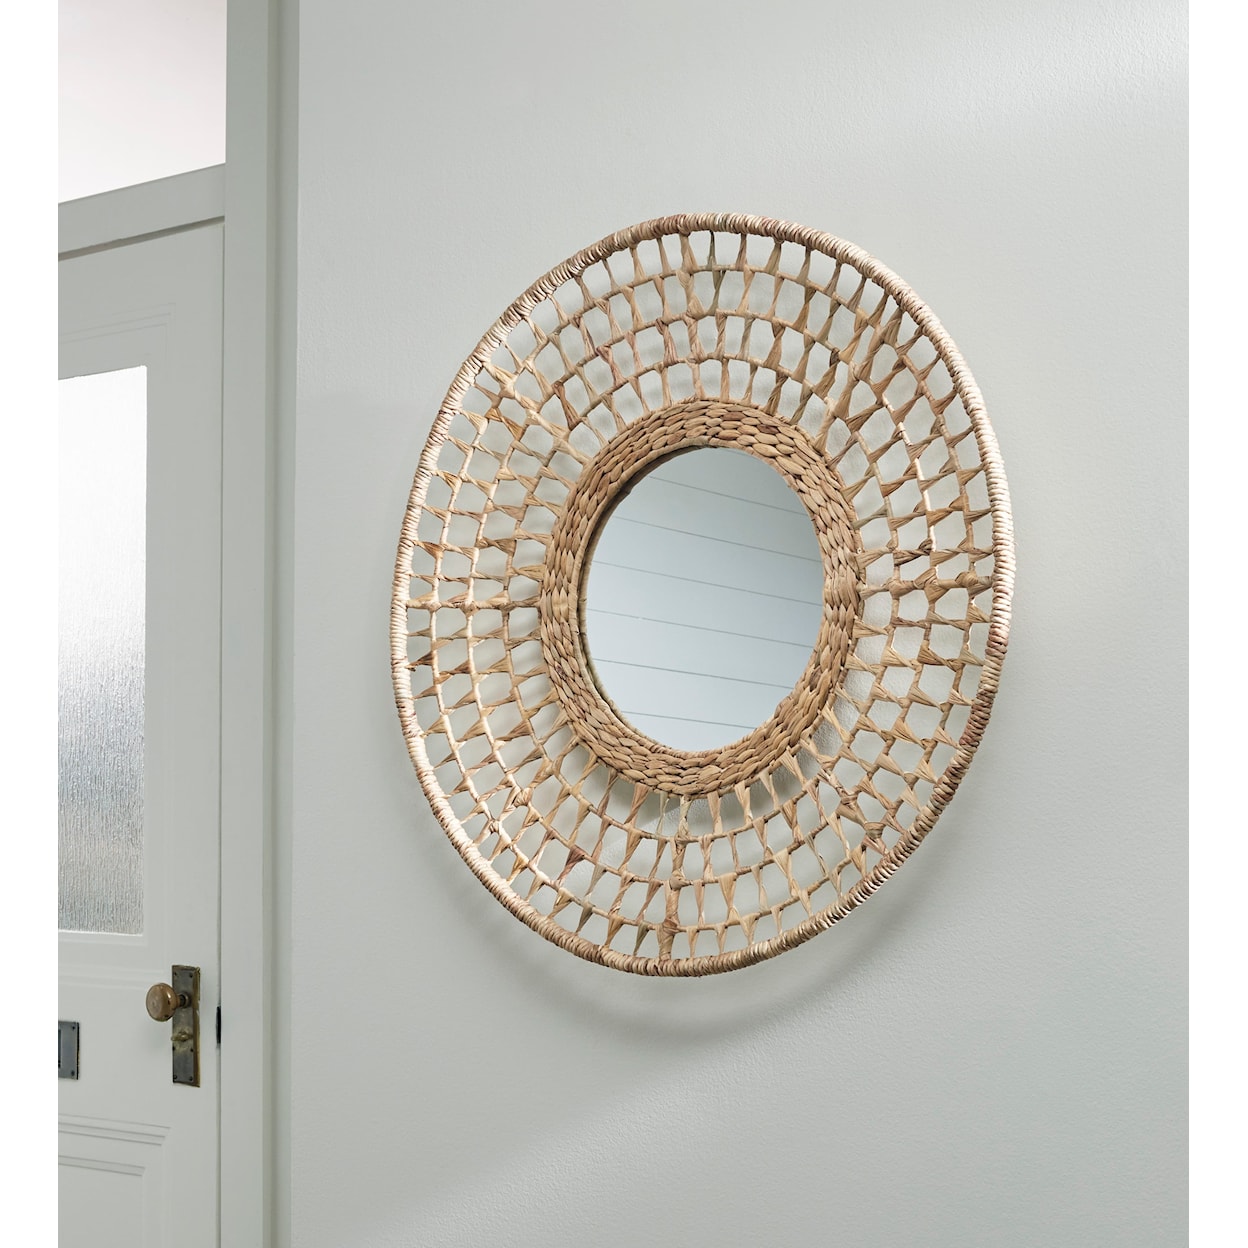 Ashley Furniture Signature Design Accent Mirrors Deltlea Accent Mirror